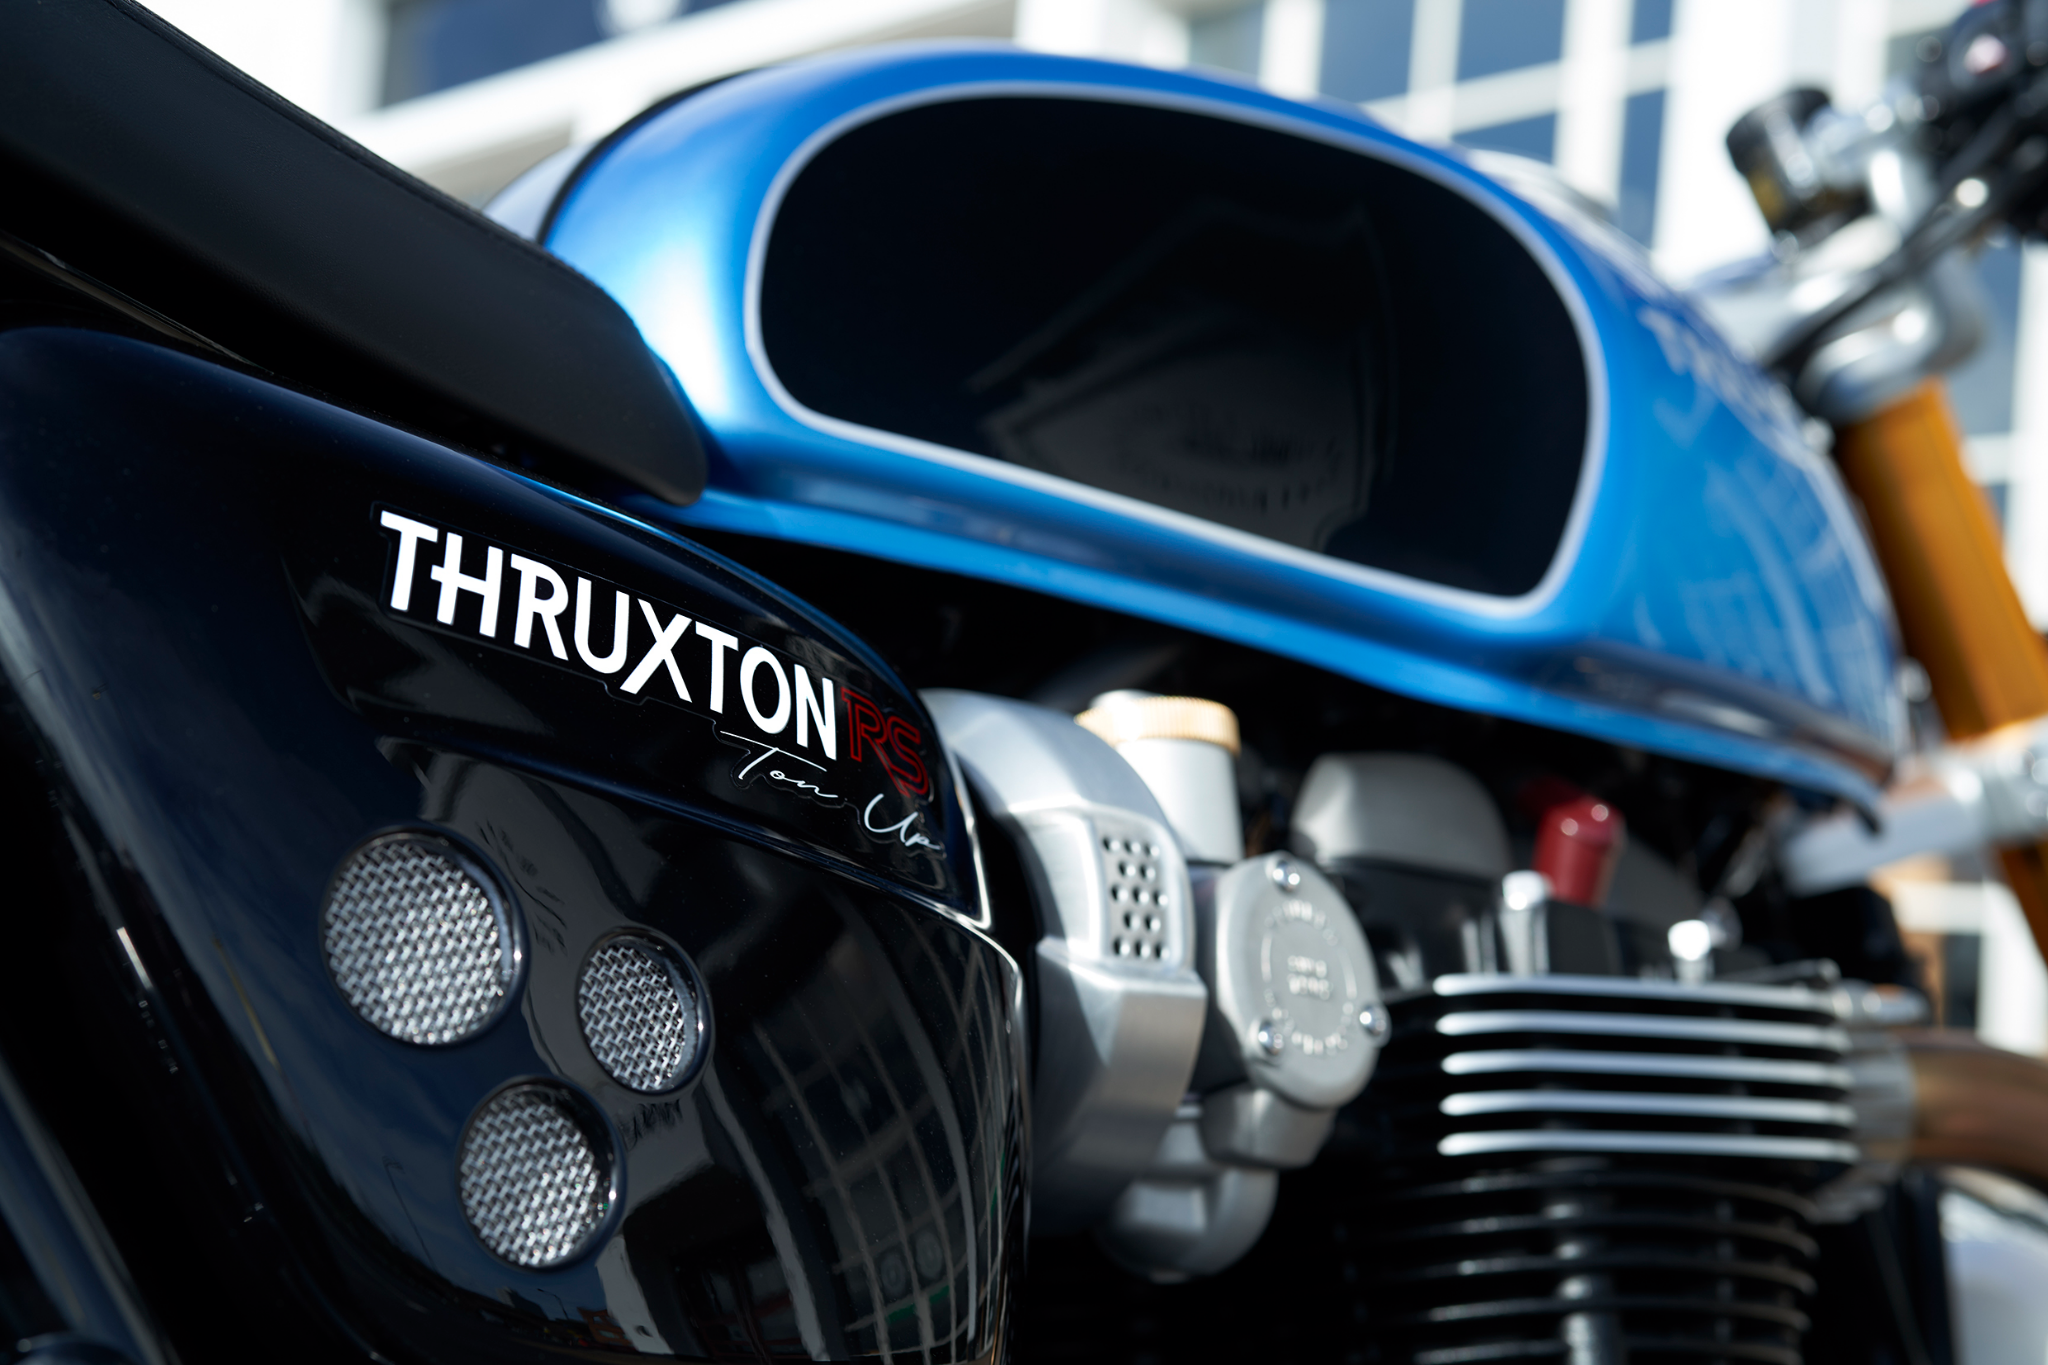 Thruxton Ton-up